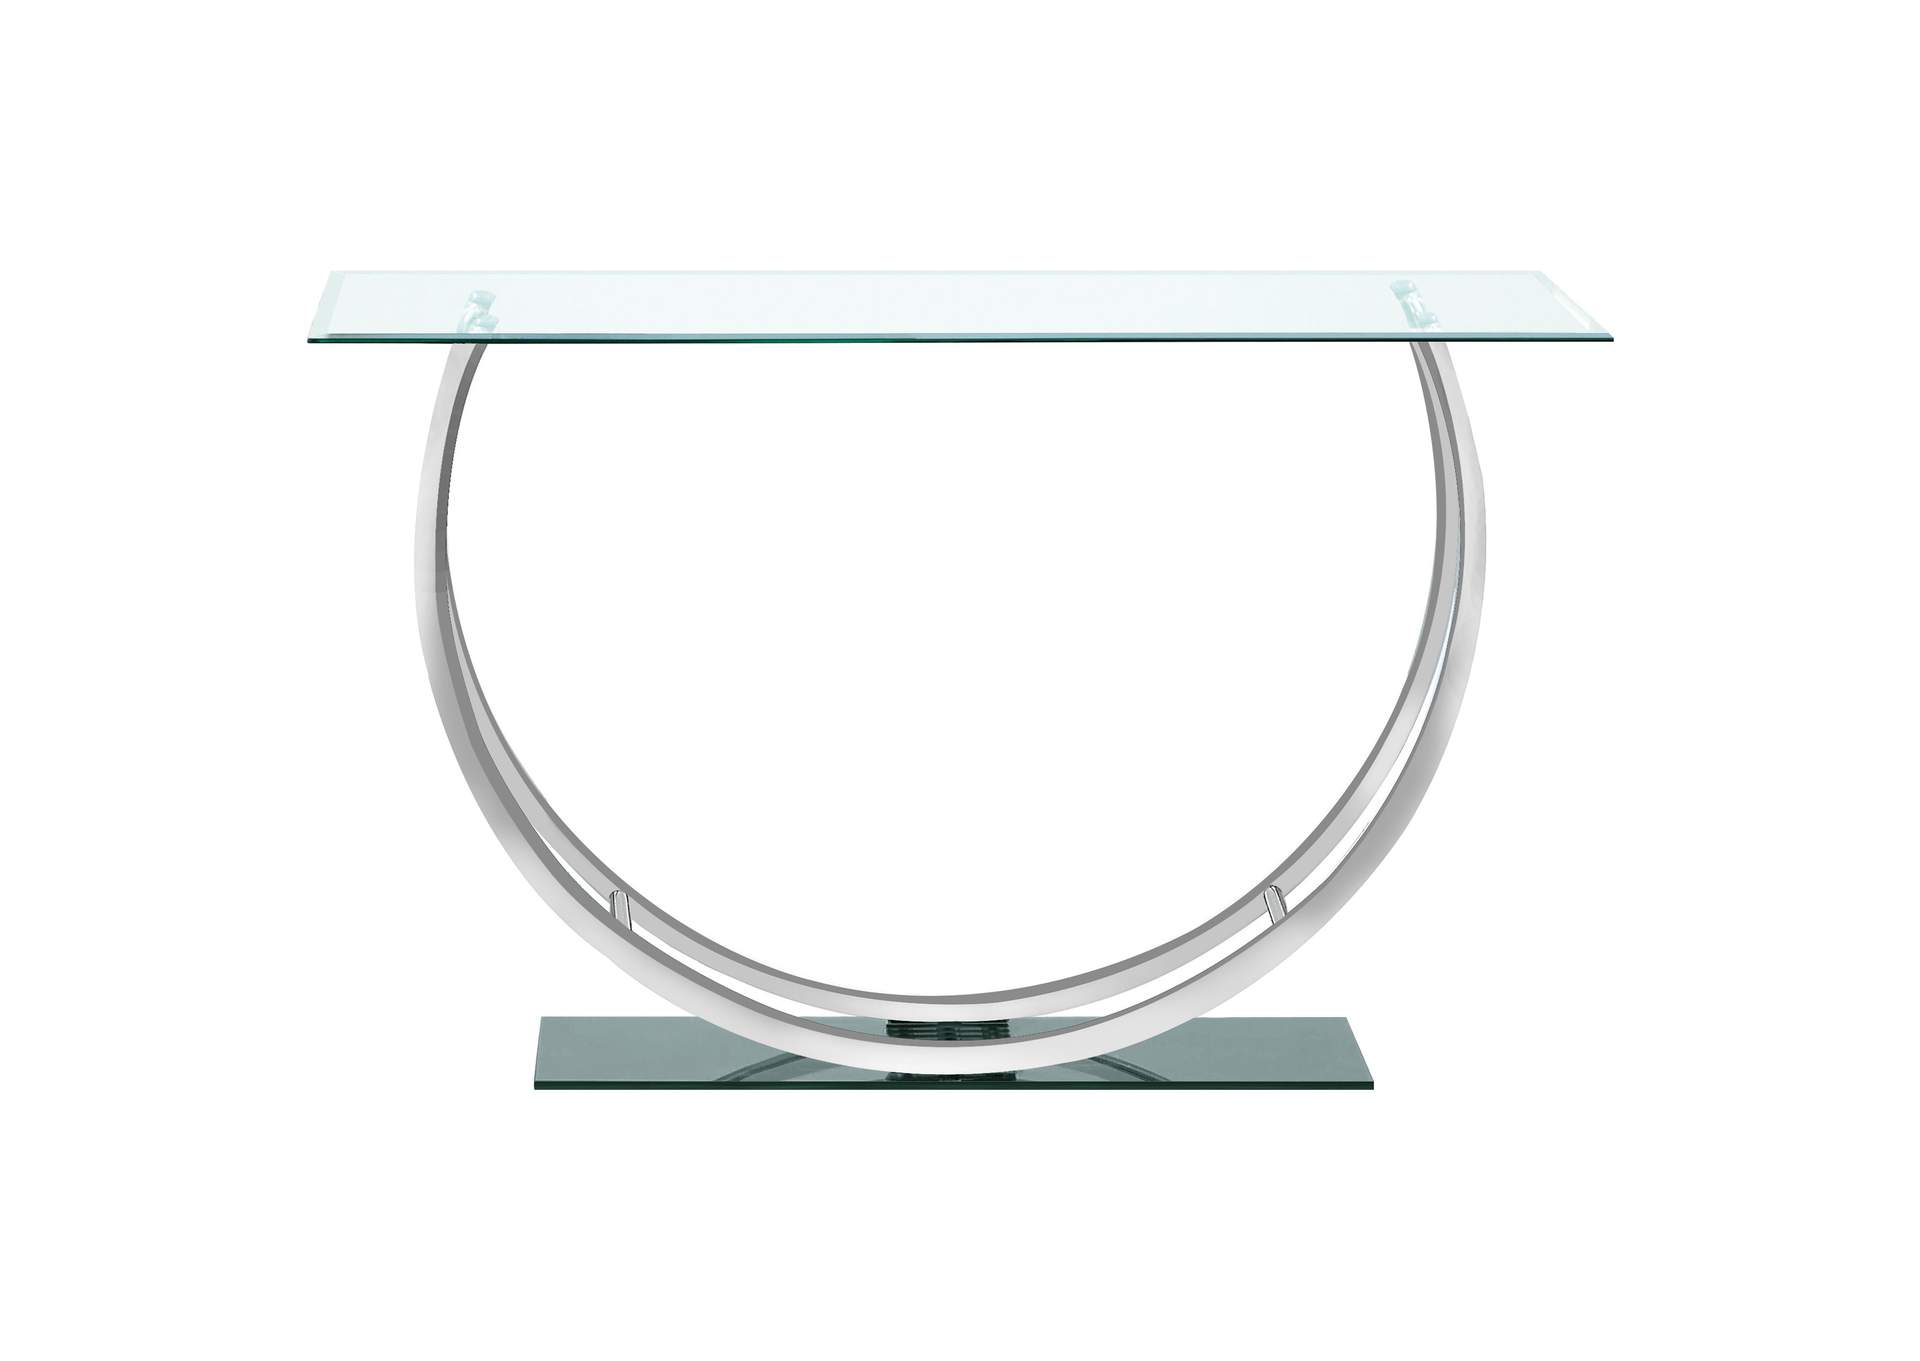 Danville U-shaped Sofa Table Chrome,Coaster Furniture